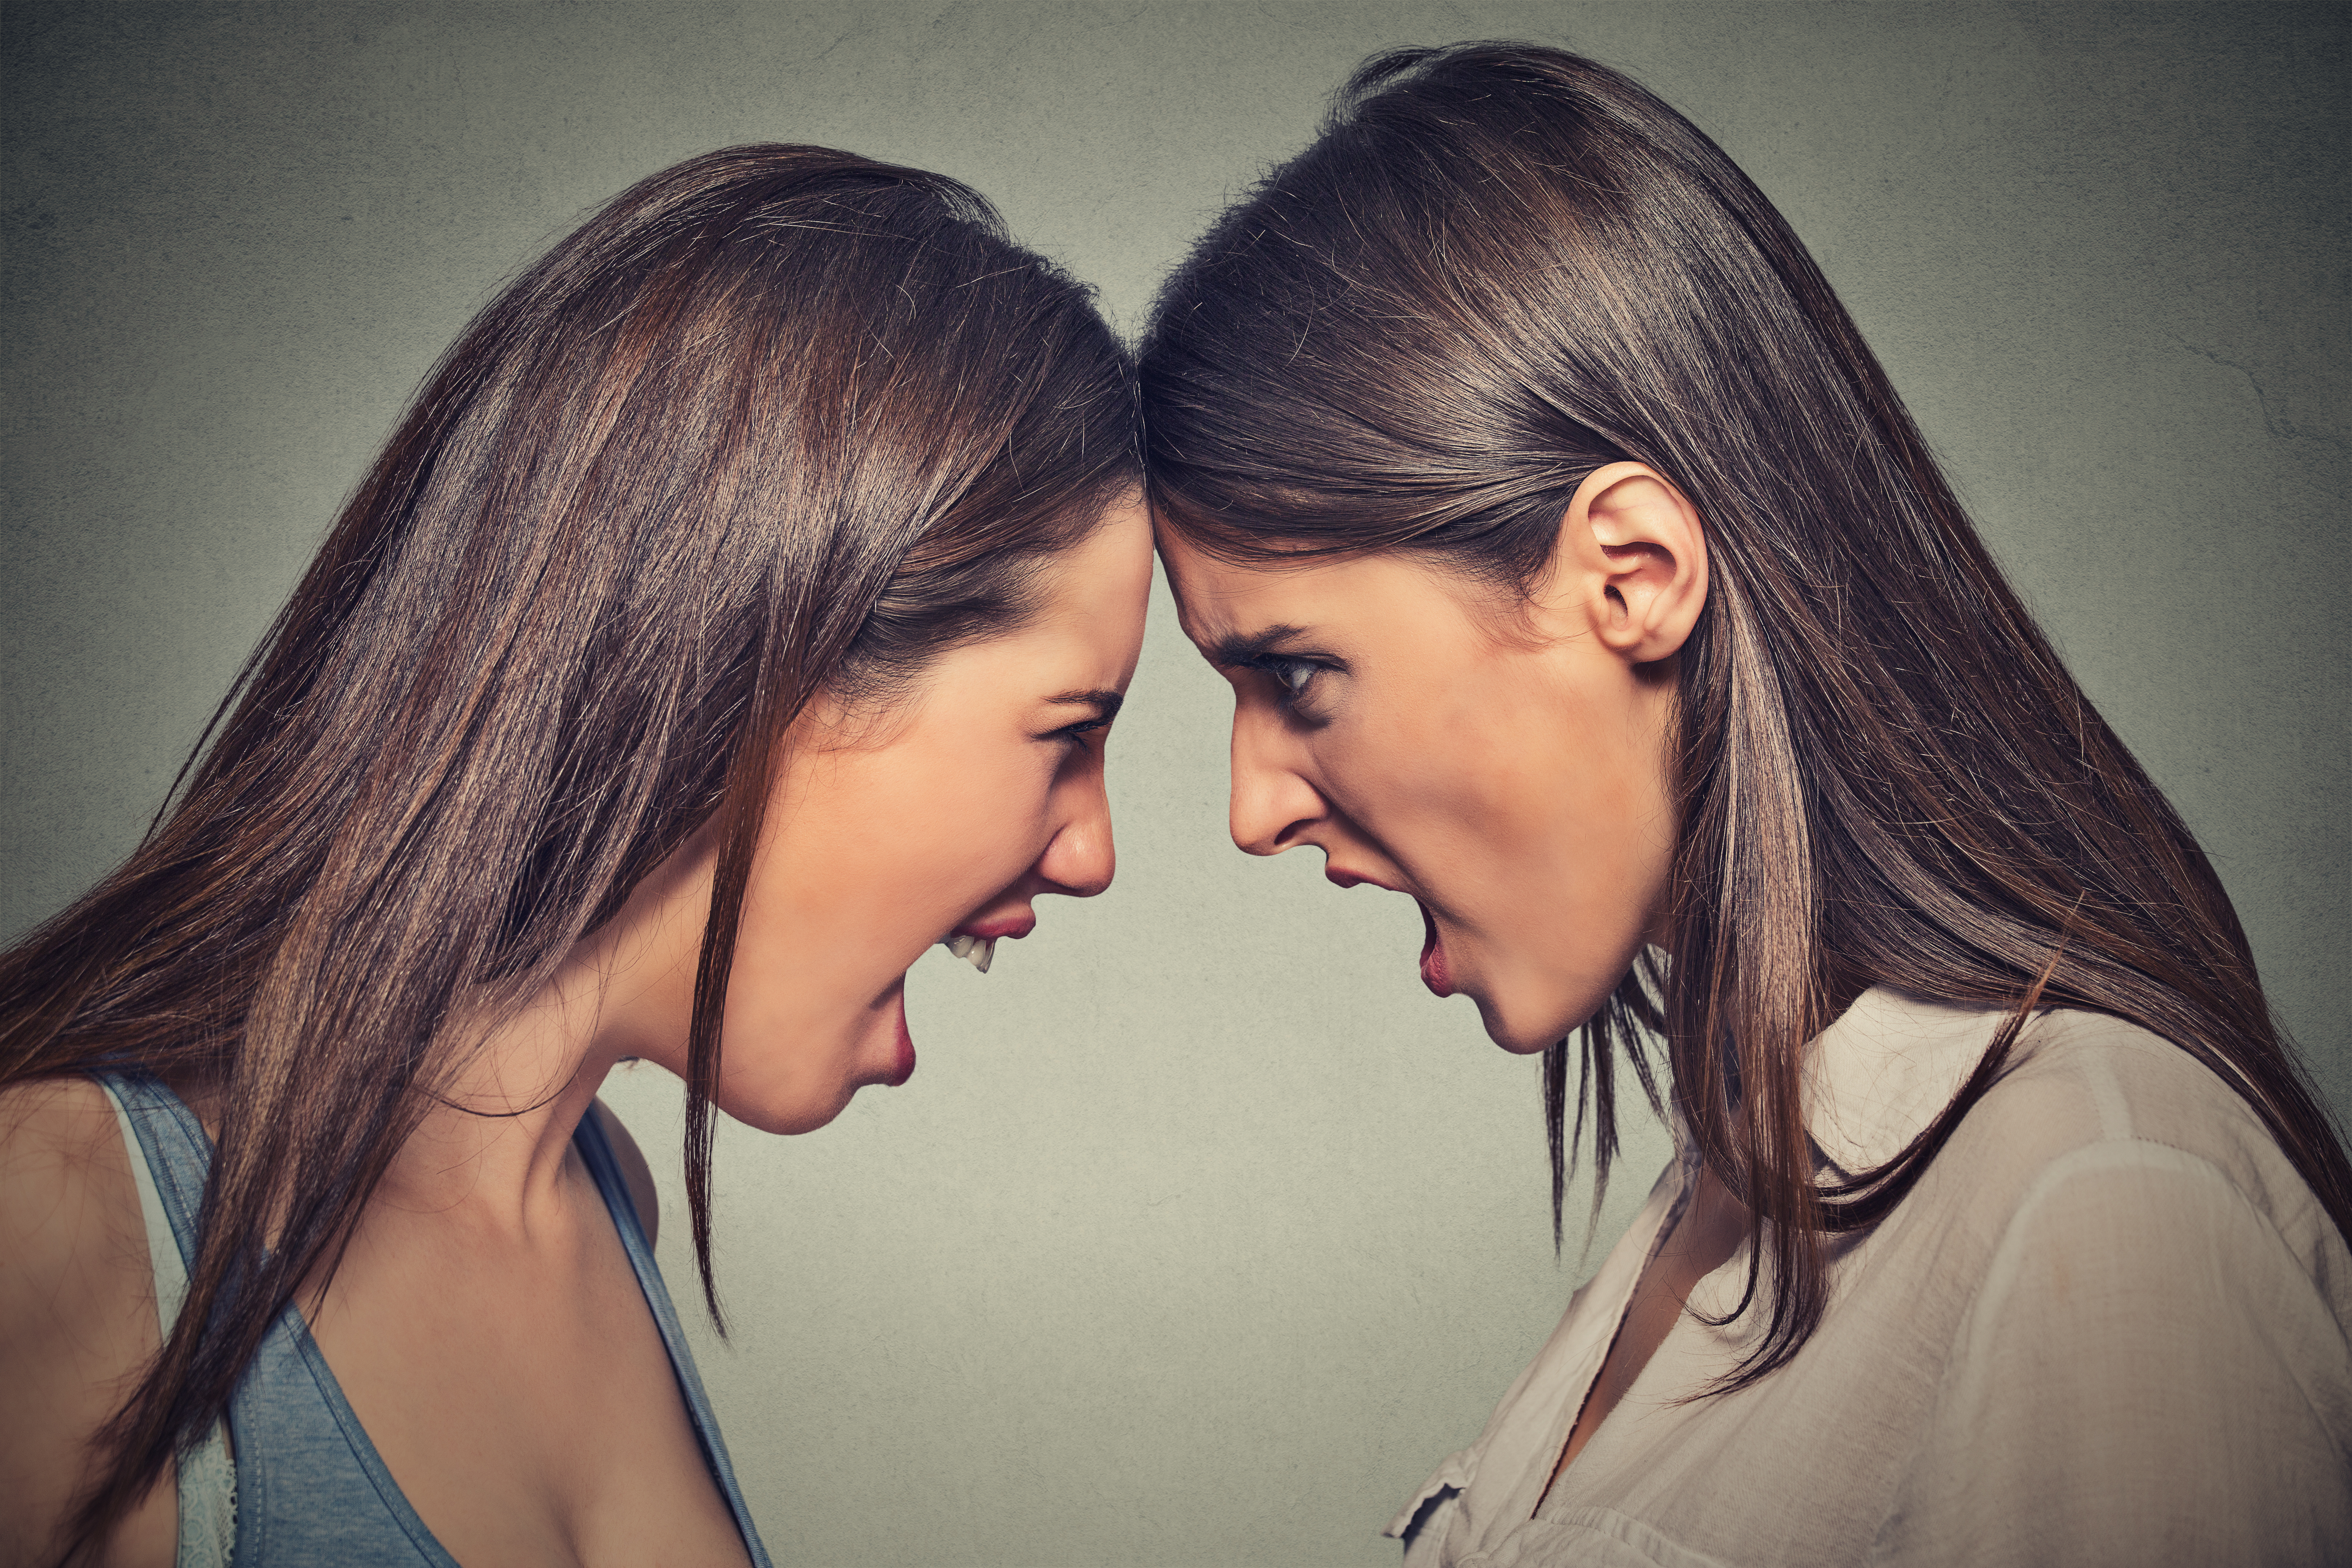 Zwei Schwestern, Kopf an Kopf, die streiten | Quelle: Shutterstock